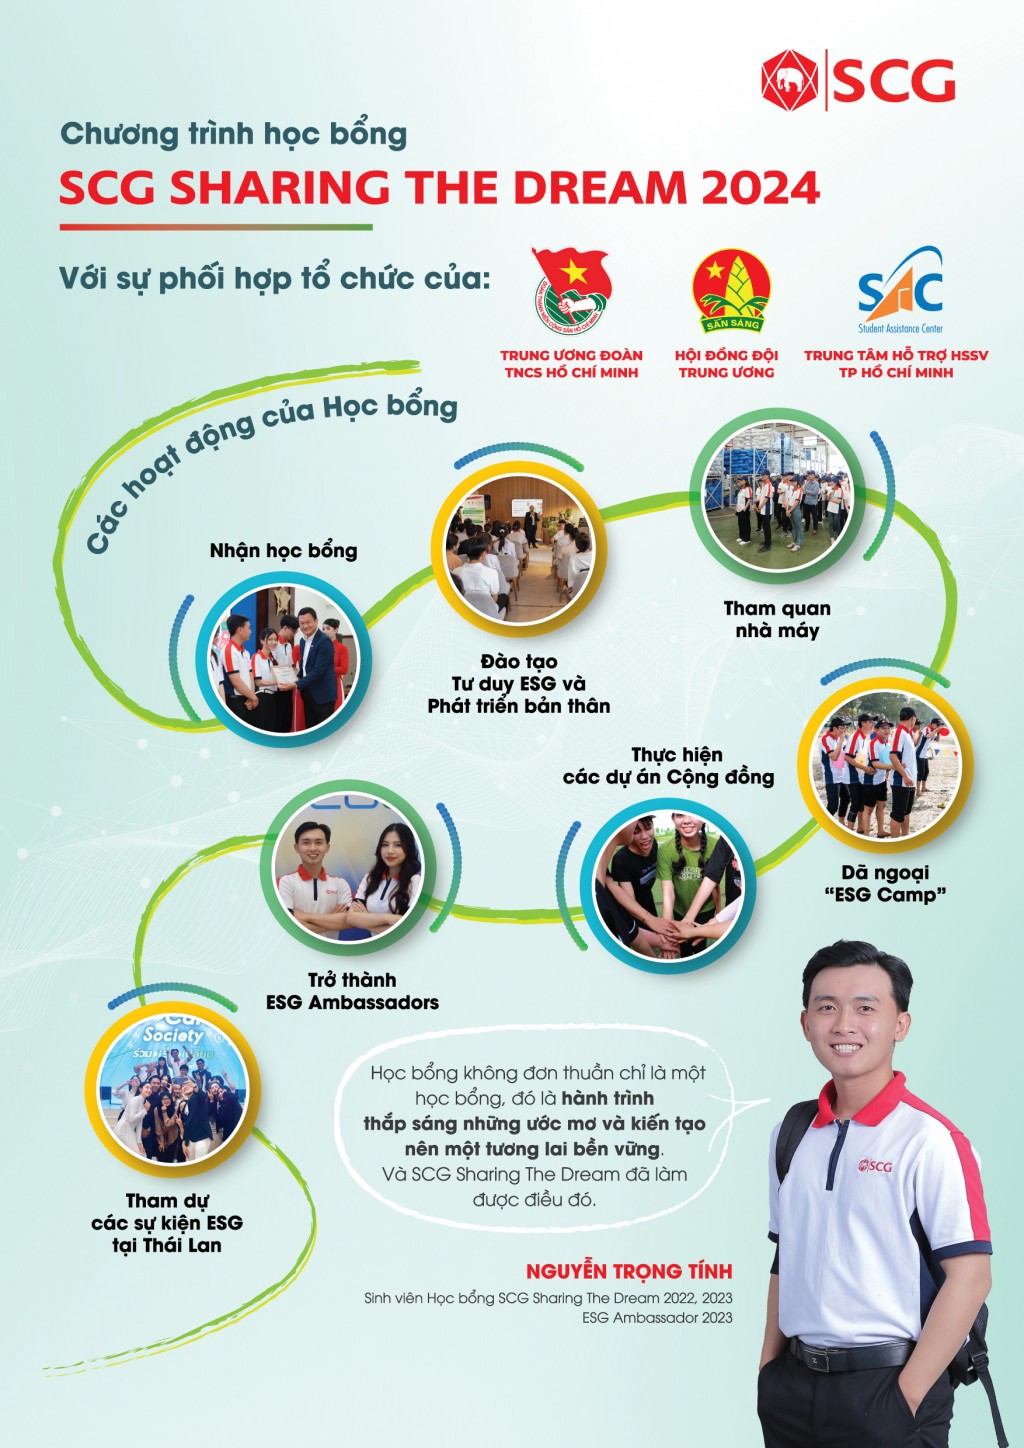 Học bổng SCG Sharing the Dream là một phần trong những nỗ lực bền bỉ của SCG, đóng góp vào mục tiêu phát triển bền vững của Việt Nam.